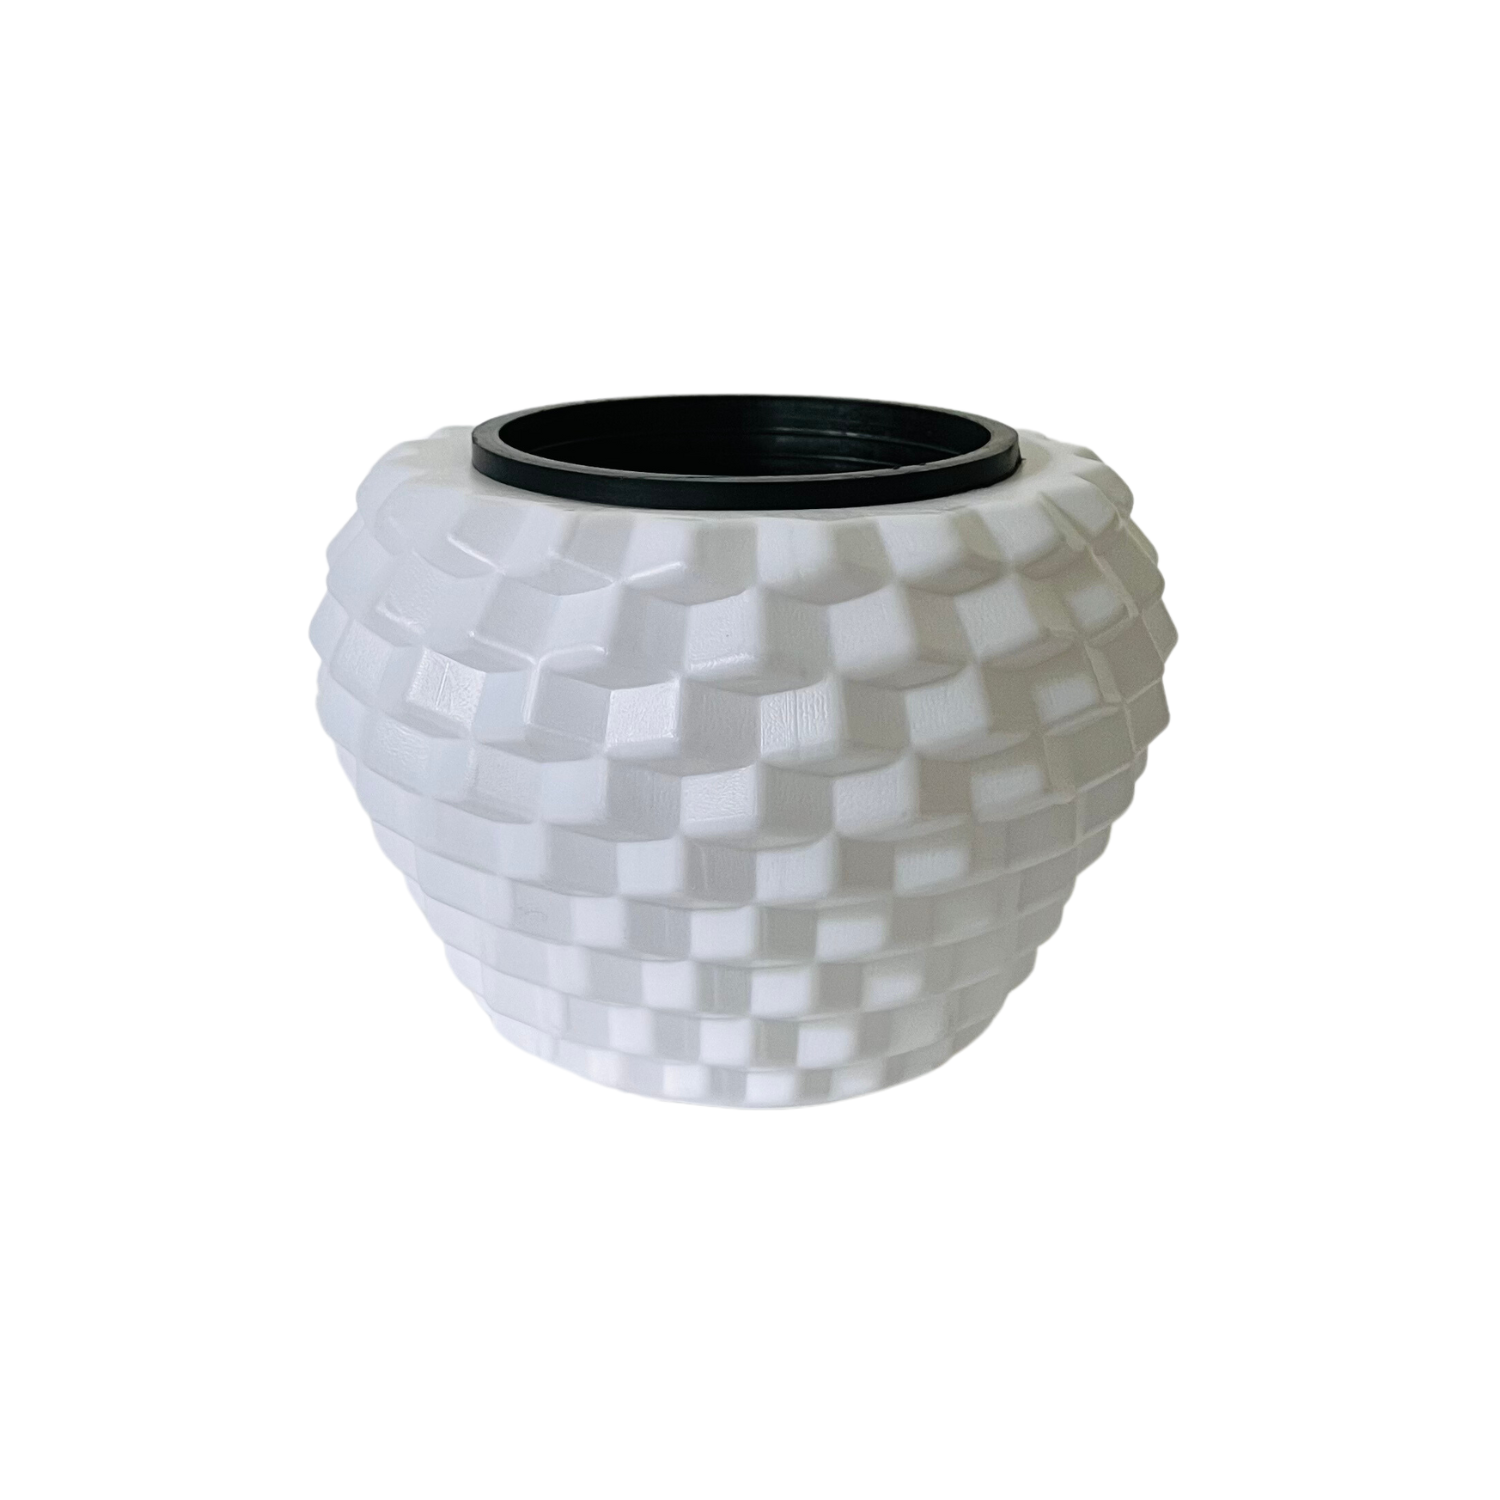 Pixel Pot | Round Pot With inner For Tabletop | Office | Indoor Garden | Home& Garden